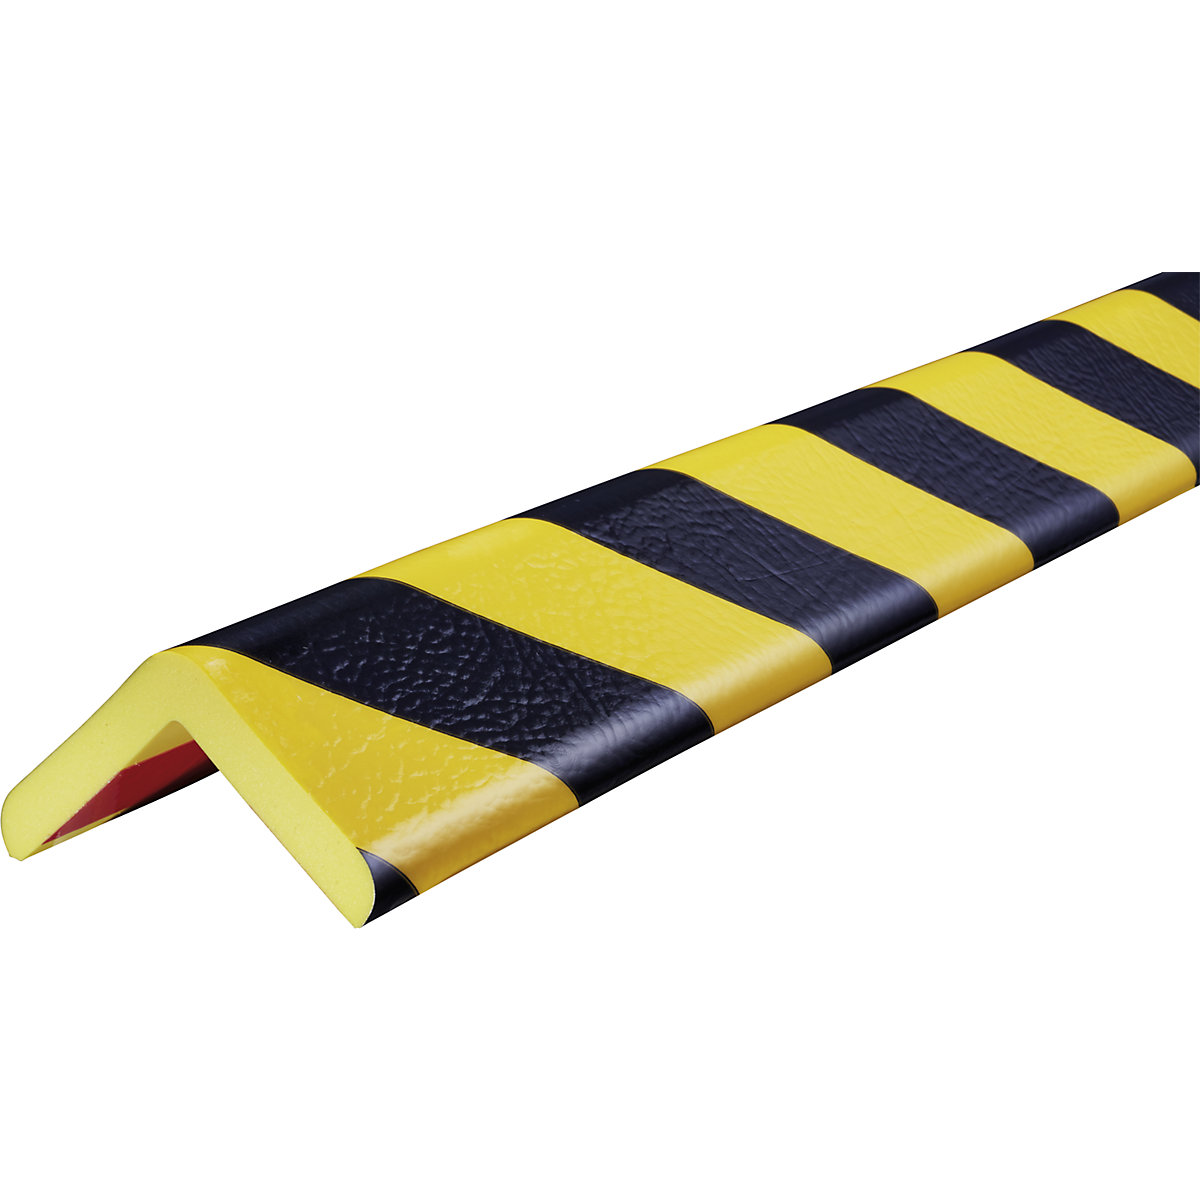 Proteção de cantos Knuffi® – SHG, tipo H+, unidade de 1 m, preto/amarelo-10